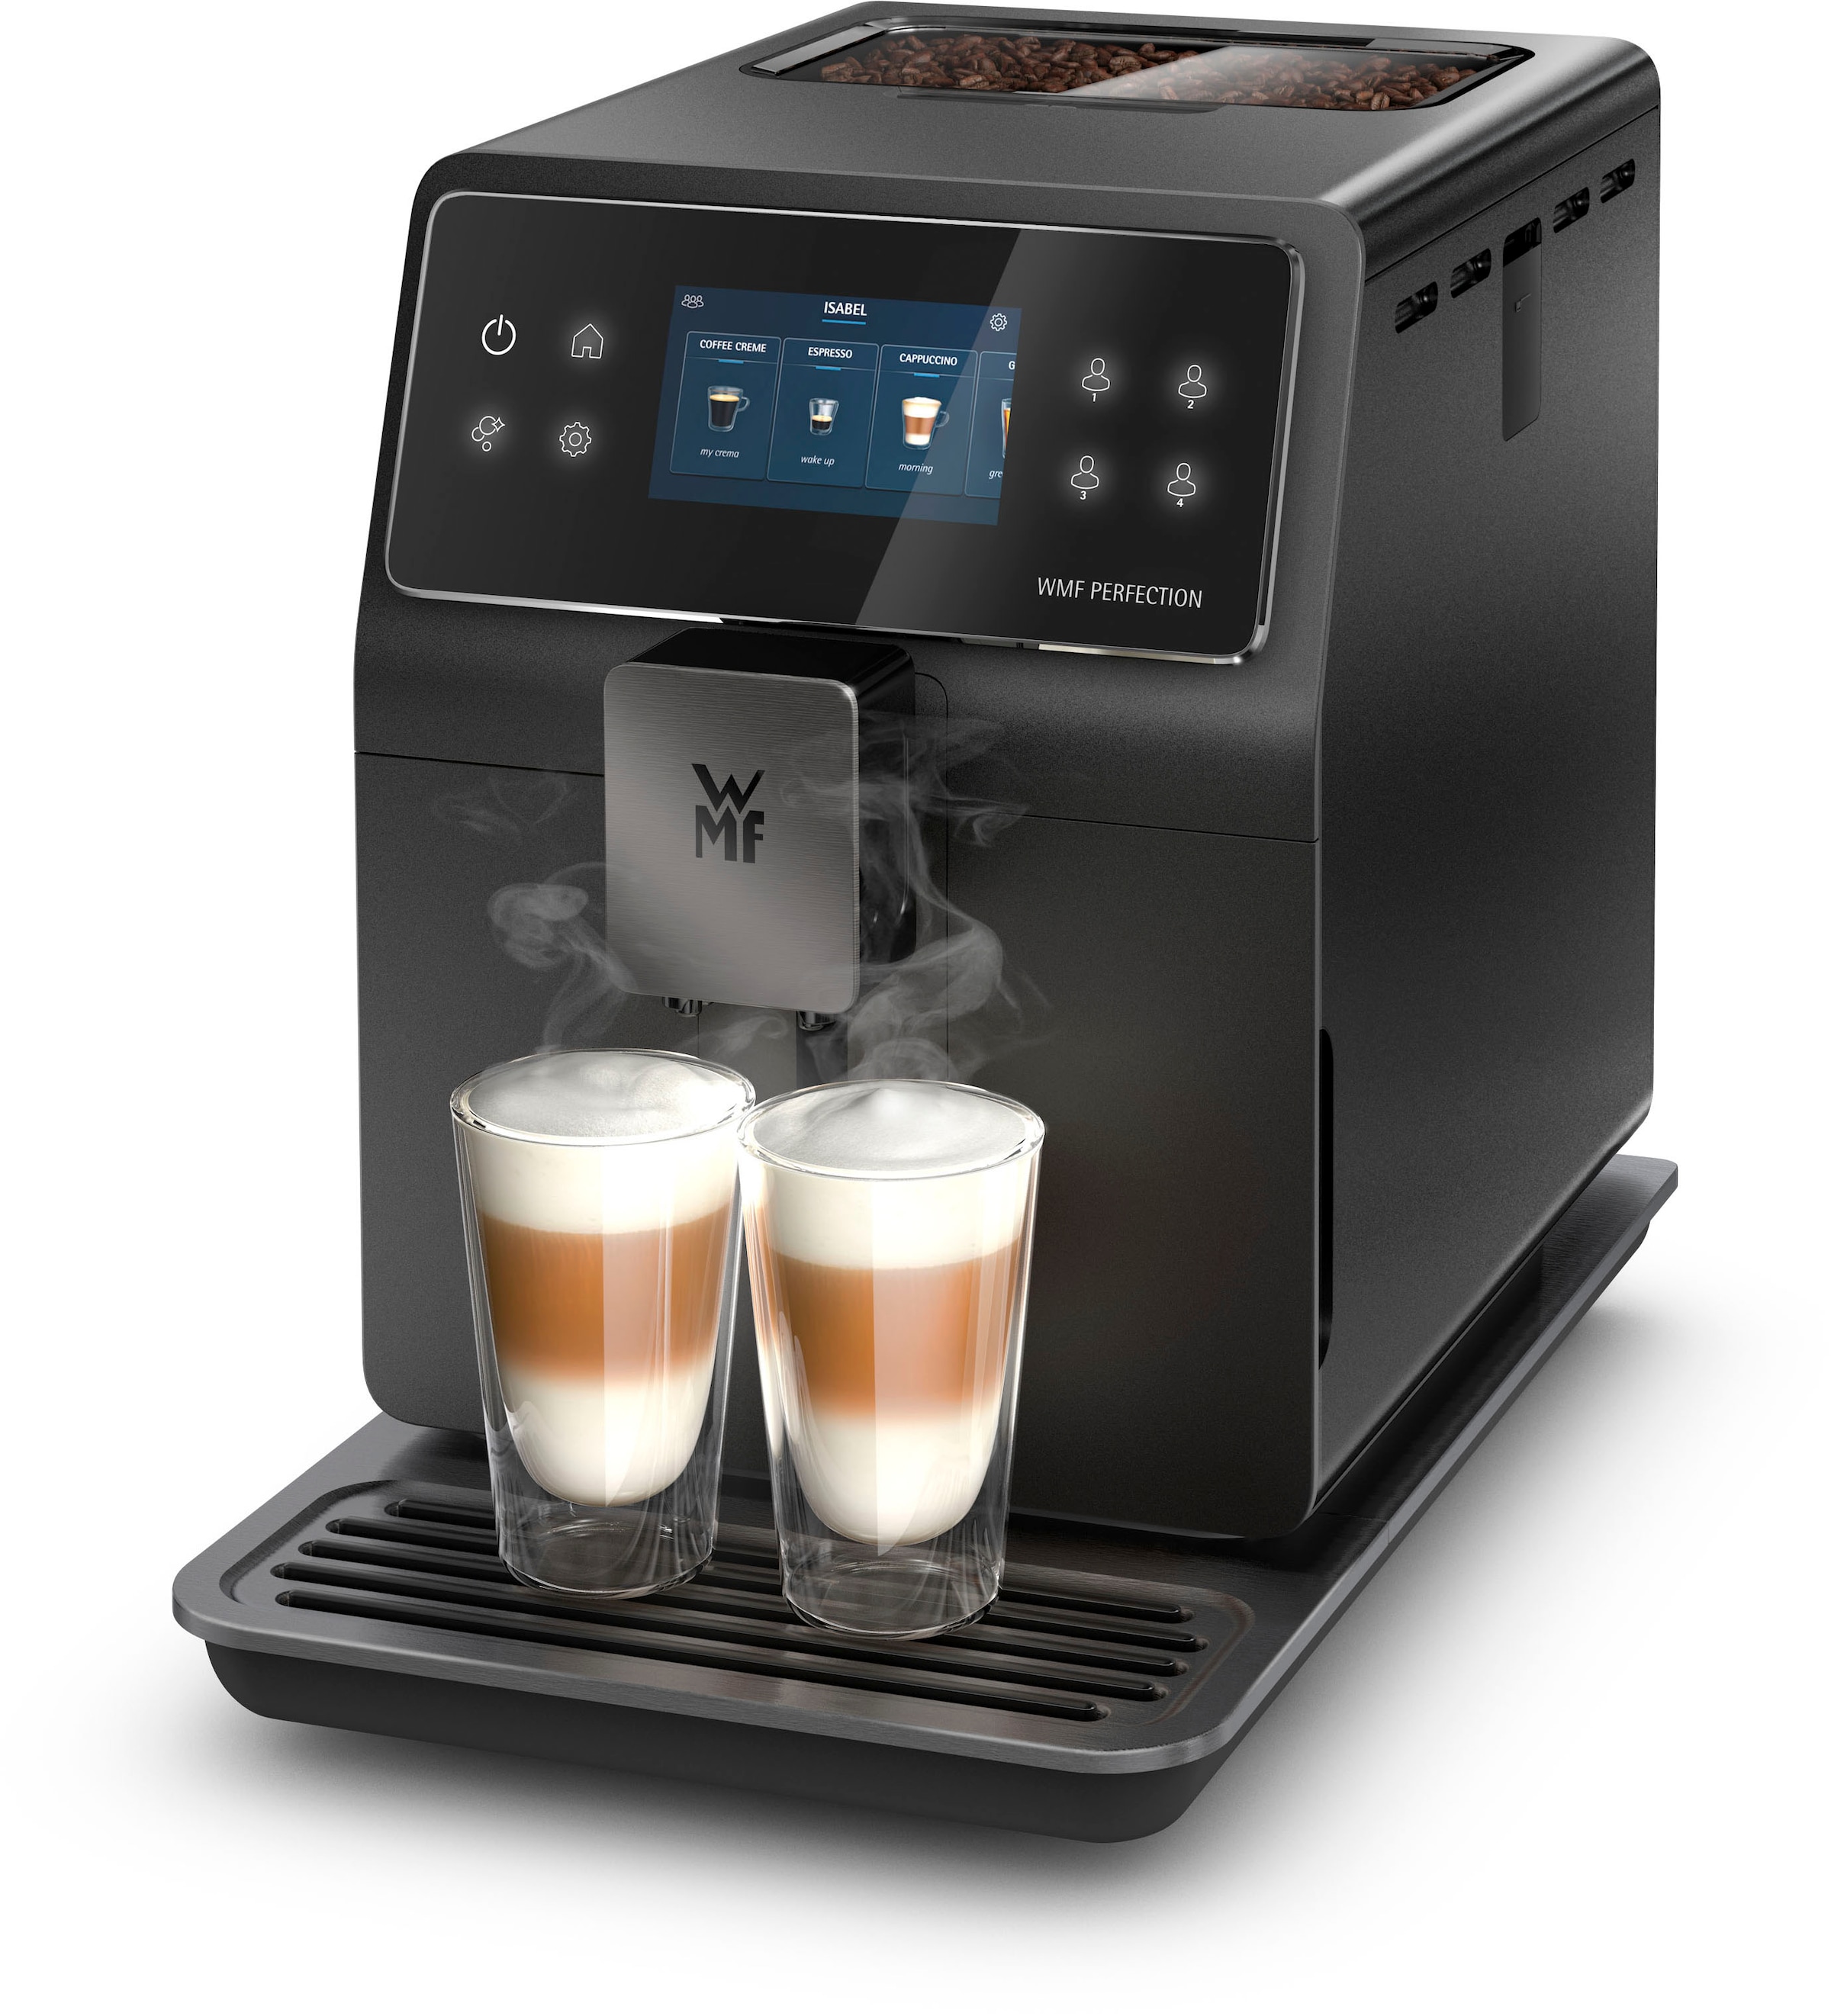 WMF Kaffeevollautomat "Perfection 740 CP820810", intuitive Benutzeroberfläche, perfekter Milchschaum, selbstreinigend